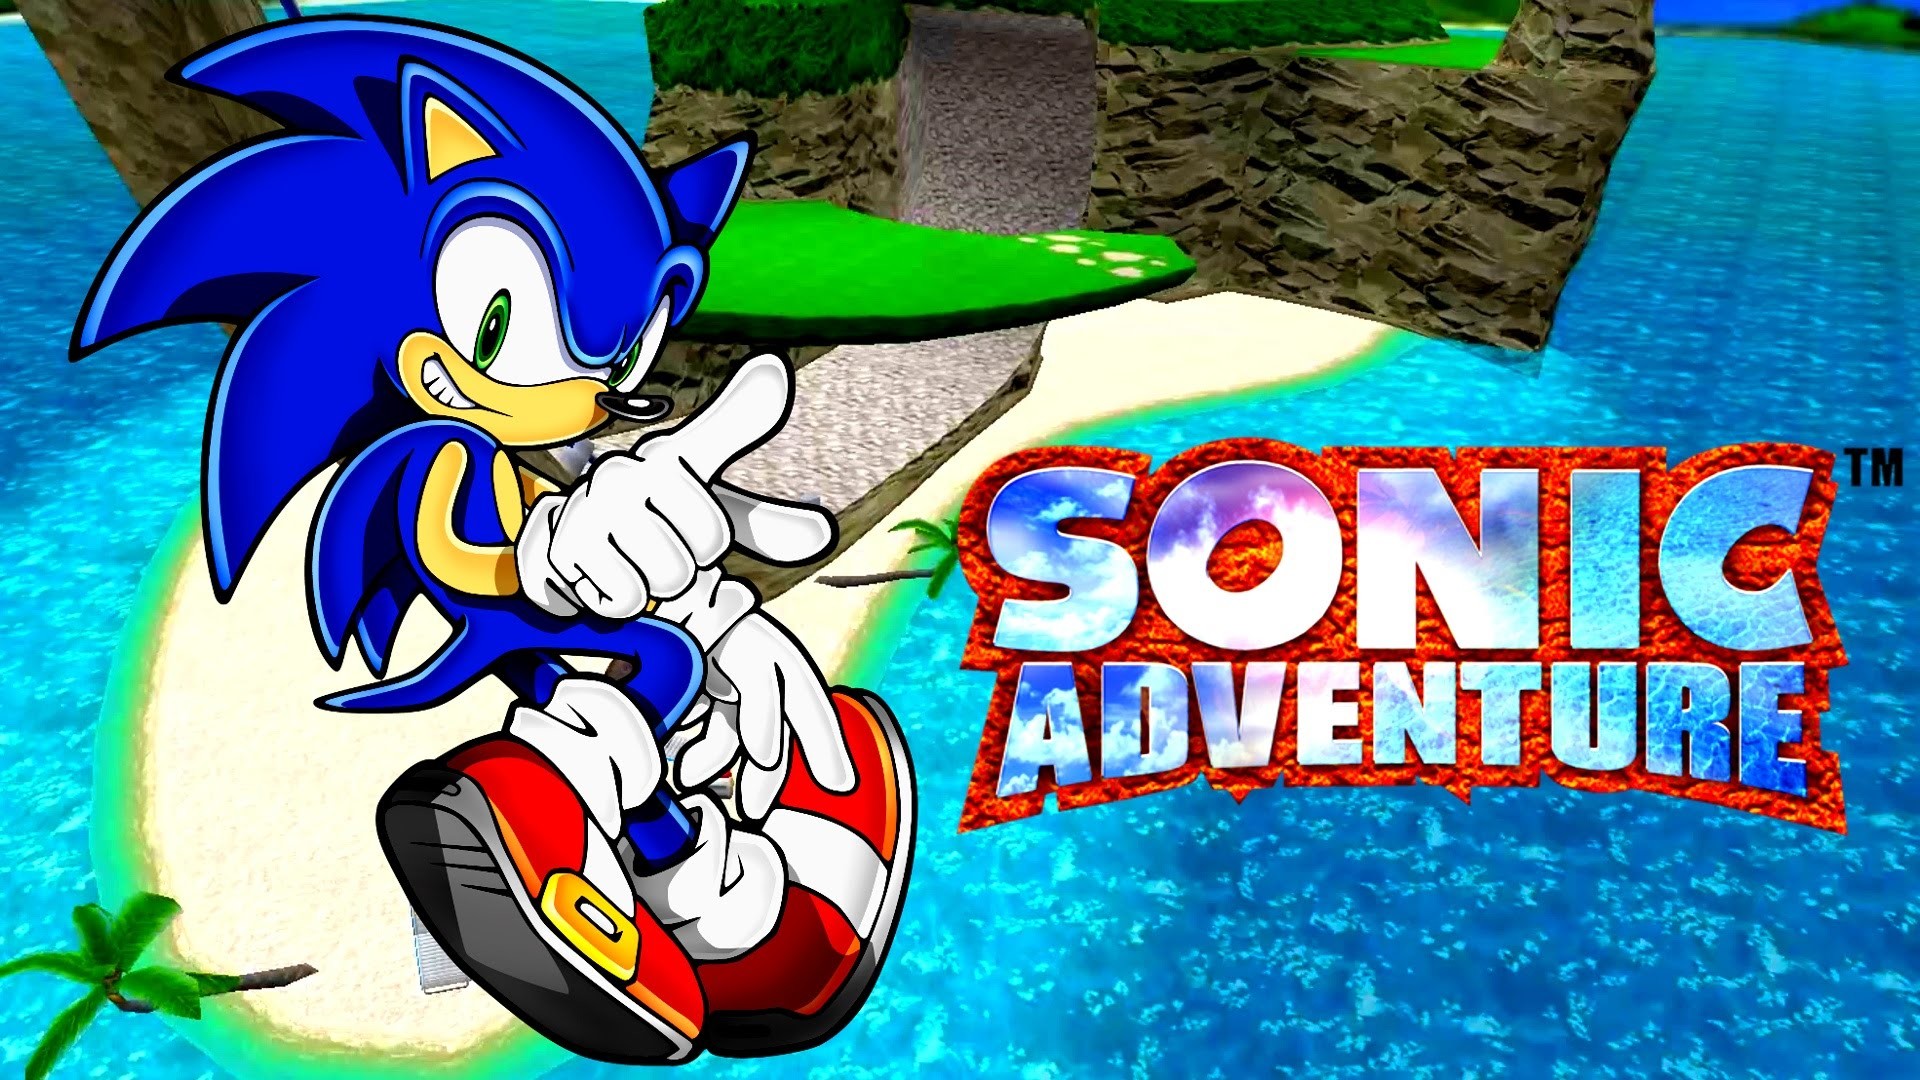 Sonic adventure dreamcast на русском. Игра Sonic Adventure DX. Соник адвенчер 1. Sonic Adventure Dreamcast обложка. Sonic Adventure DX обложка.